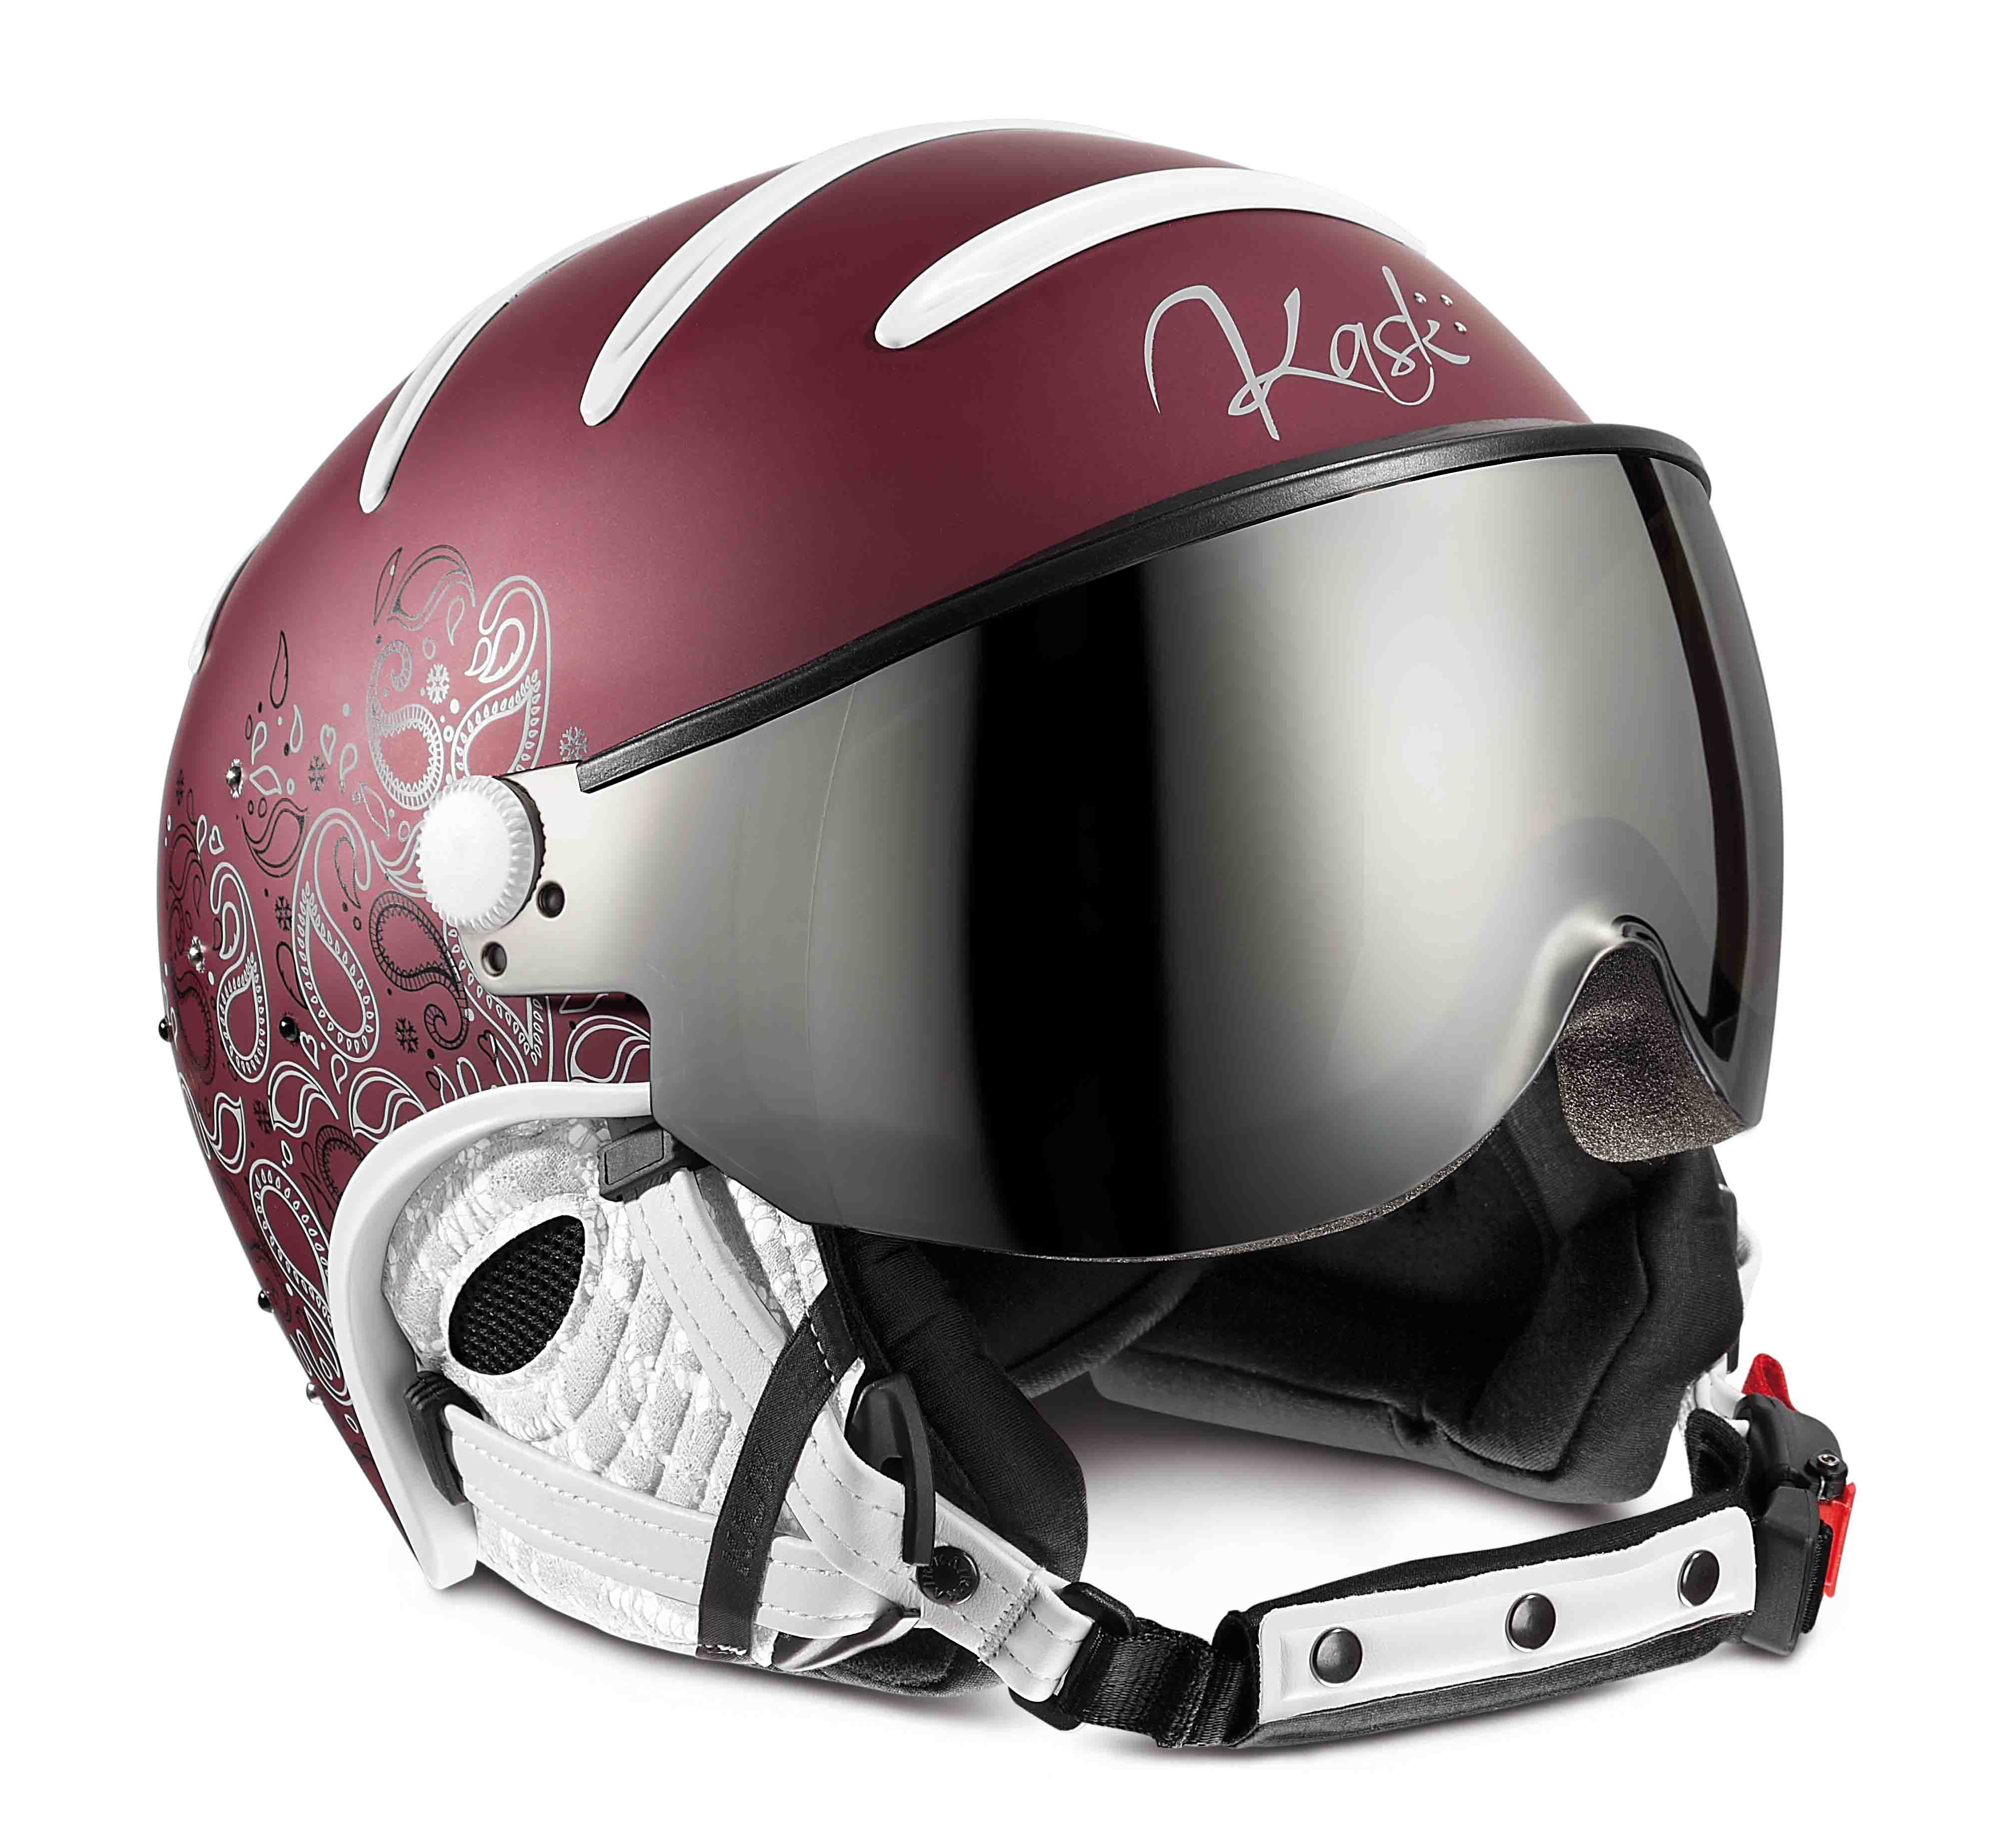 Dámská lyžařská helma Kask Elite Lady Cachemire roseberry | David sport  Harrachov